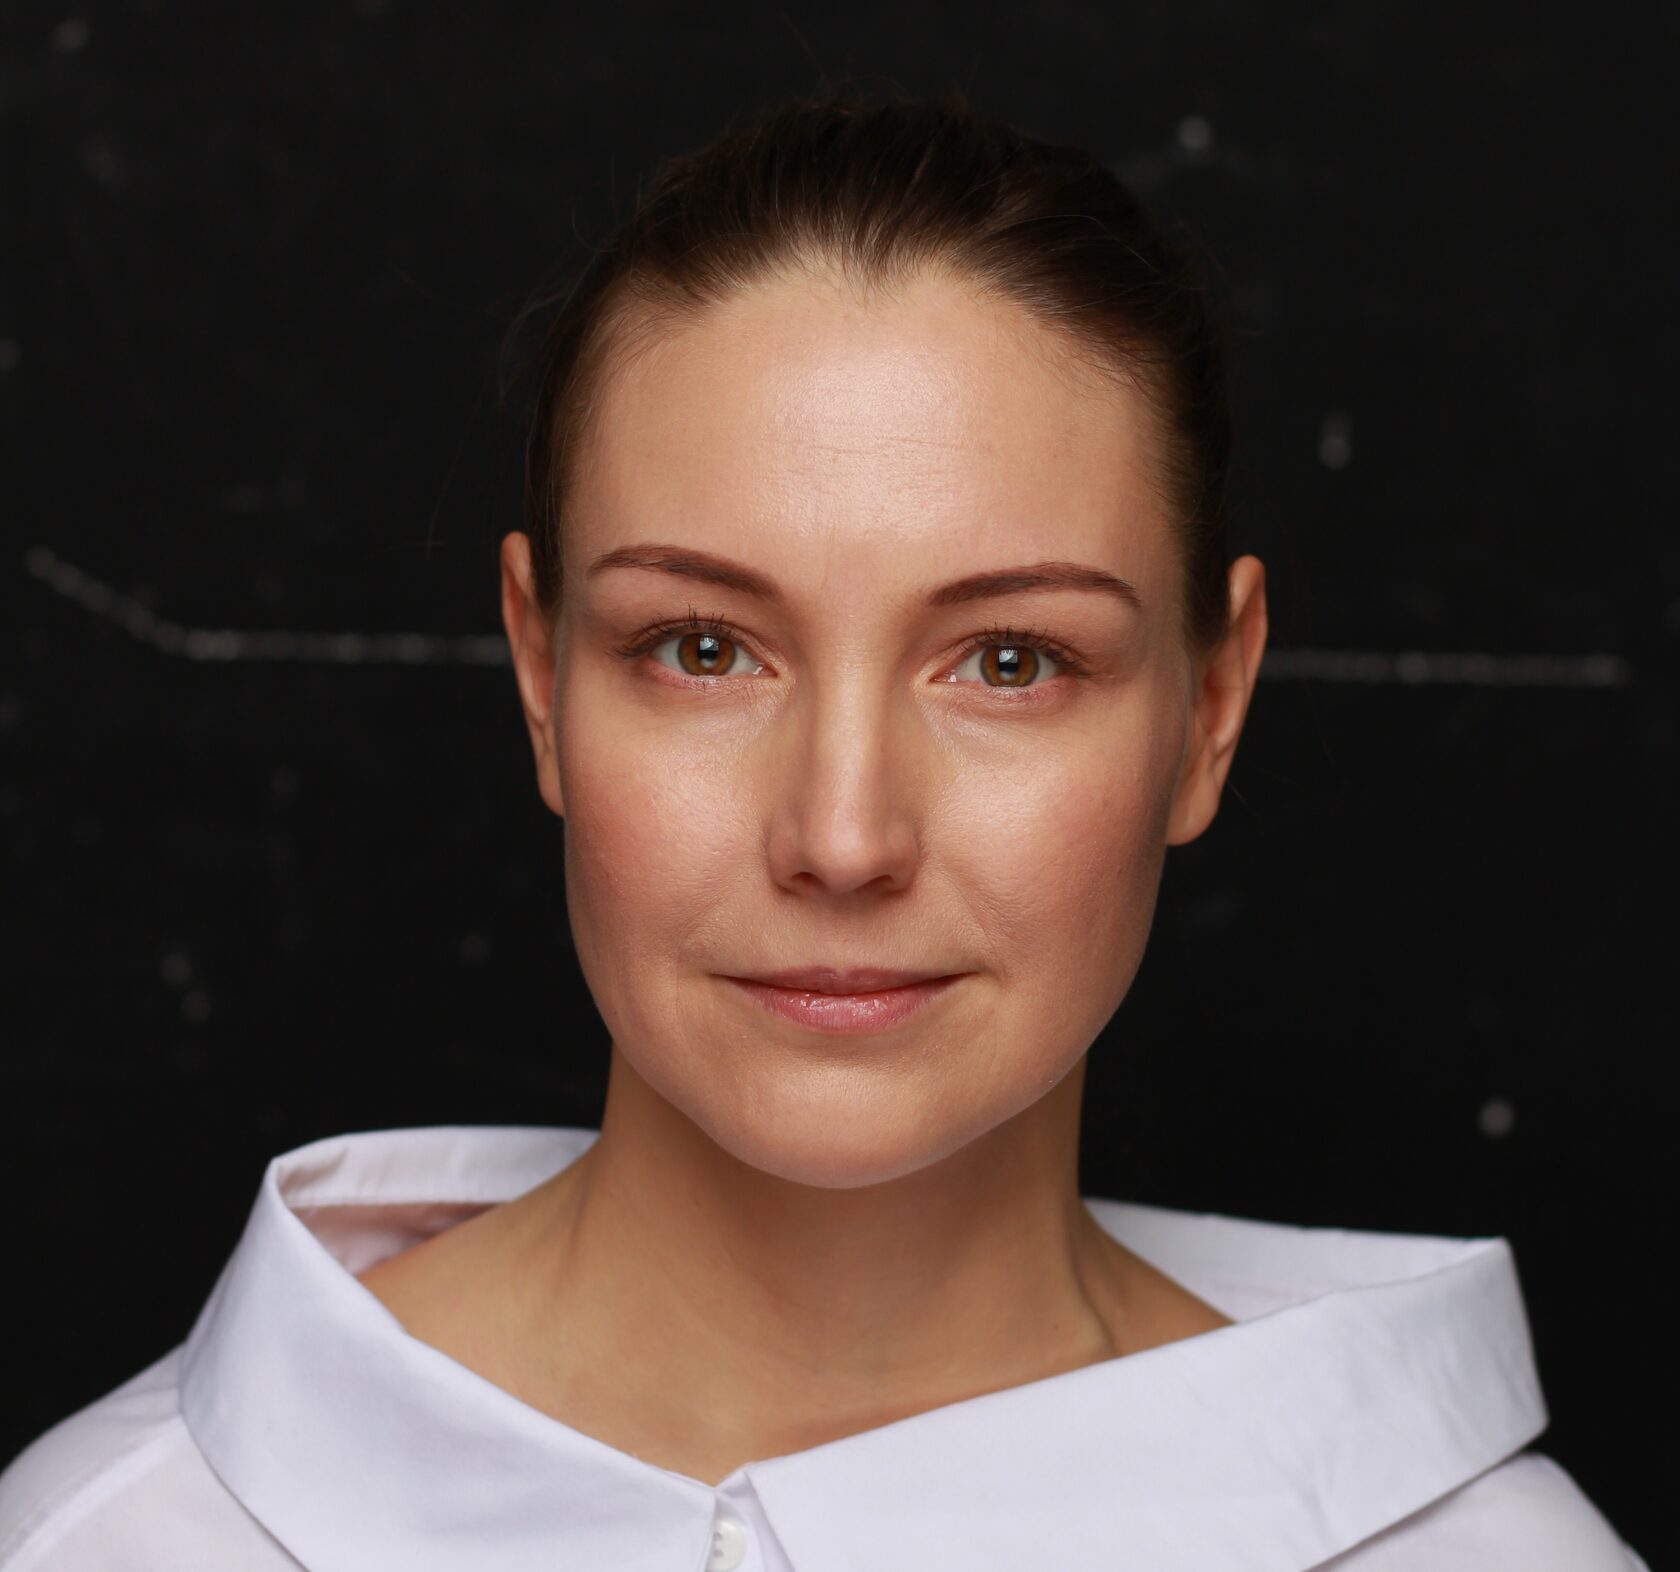 Лилия Буркова